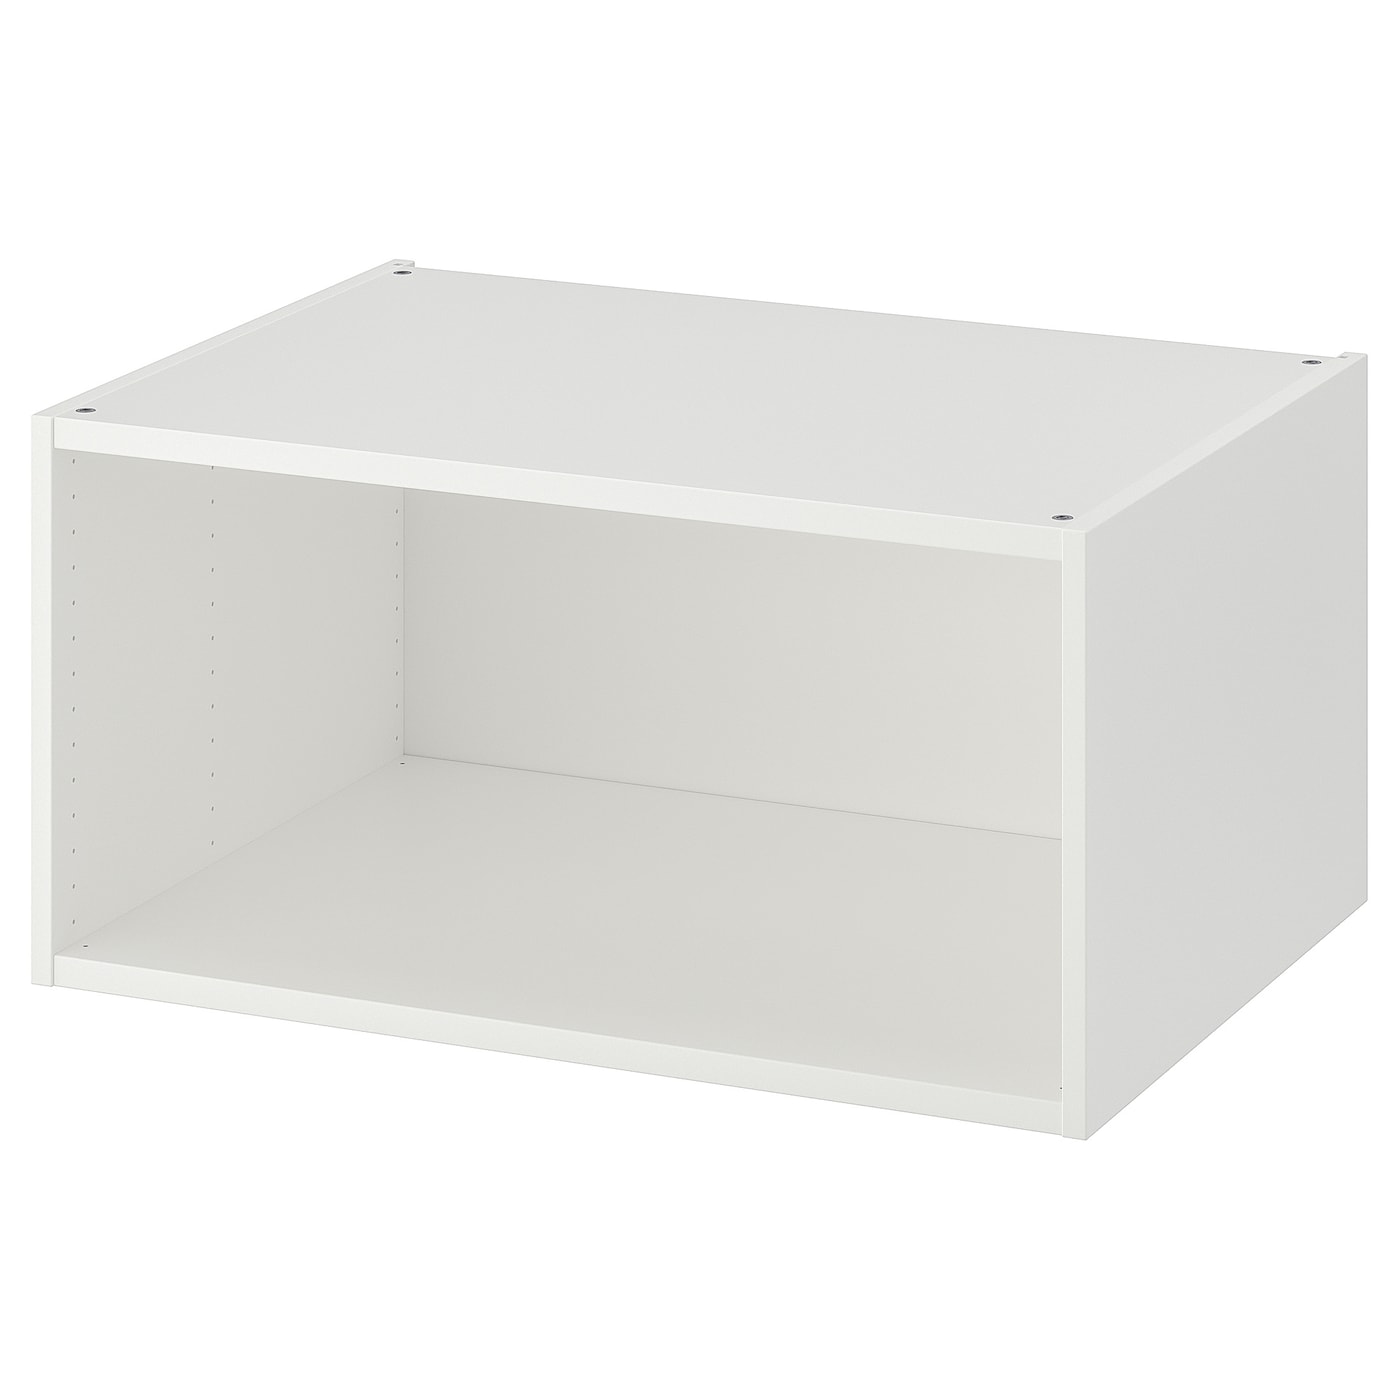 Каркас гардероба - PLATSA IKEA/ПЛАТСА ИКЕА, 40х55х80 см, белый